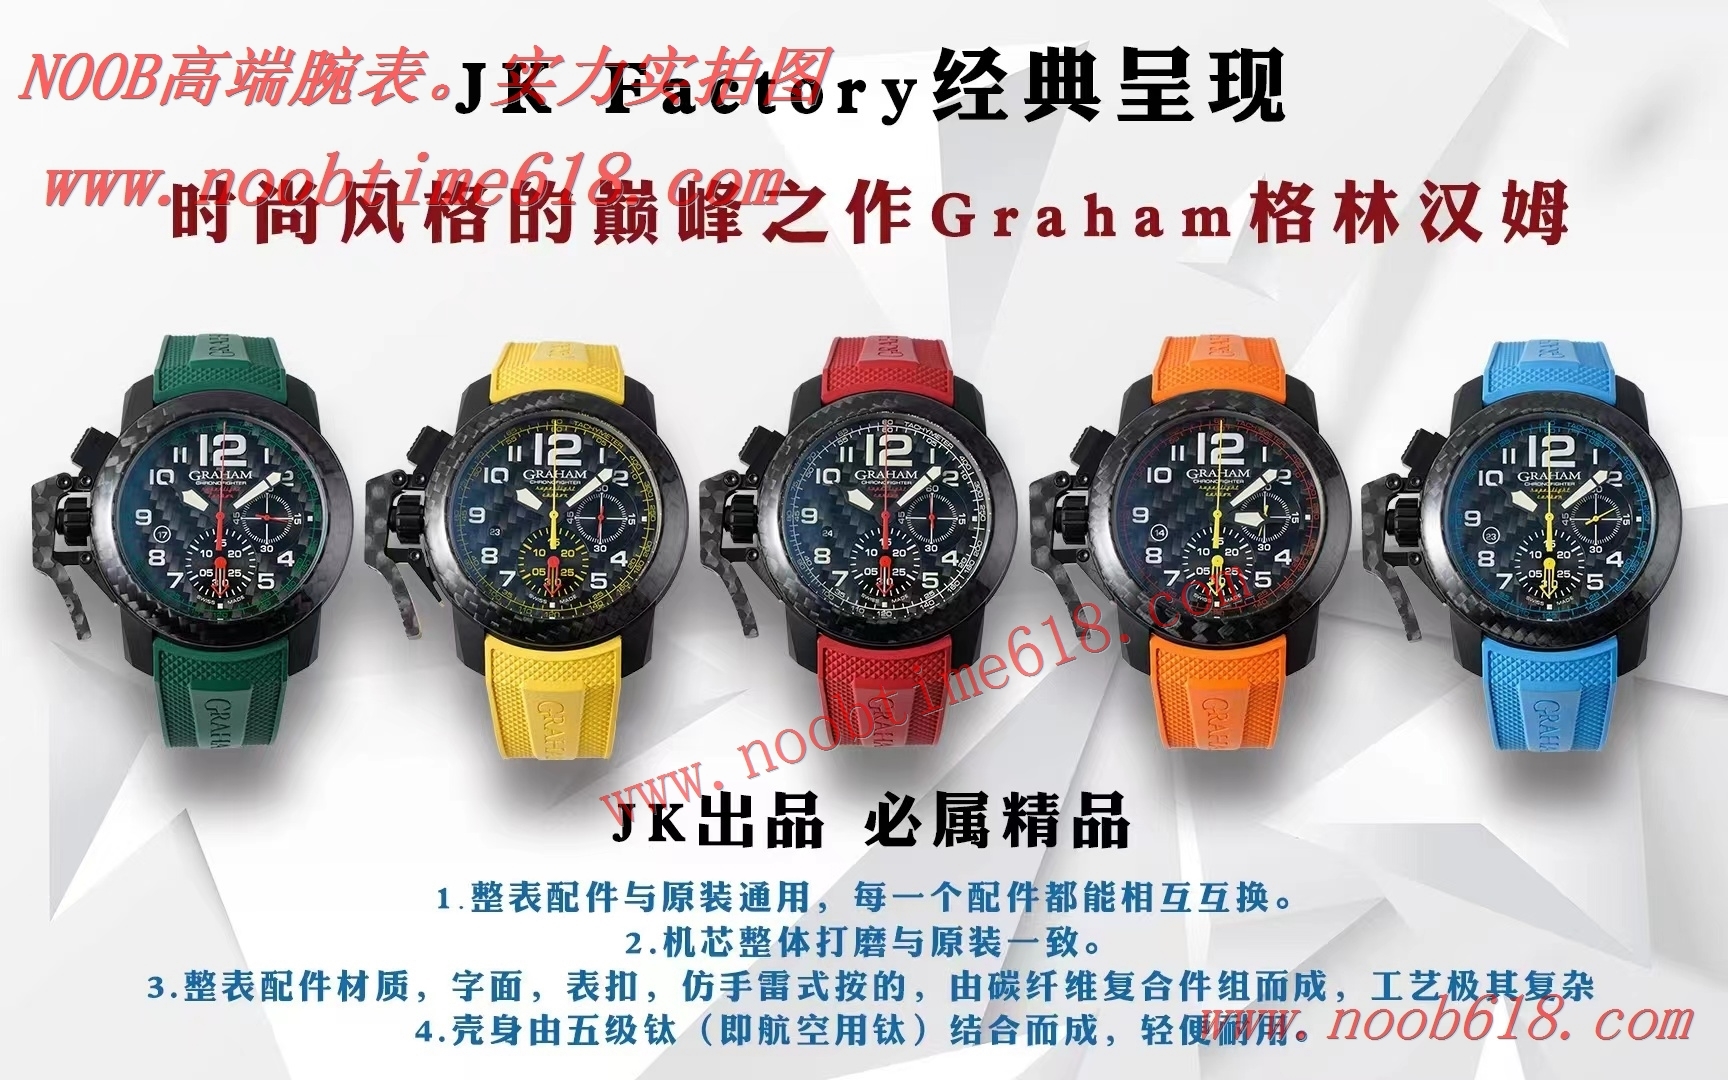 仿錶,N廠手錶,香港仿錶,JK factory Graham格林漢姆碳纖維仿錶